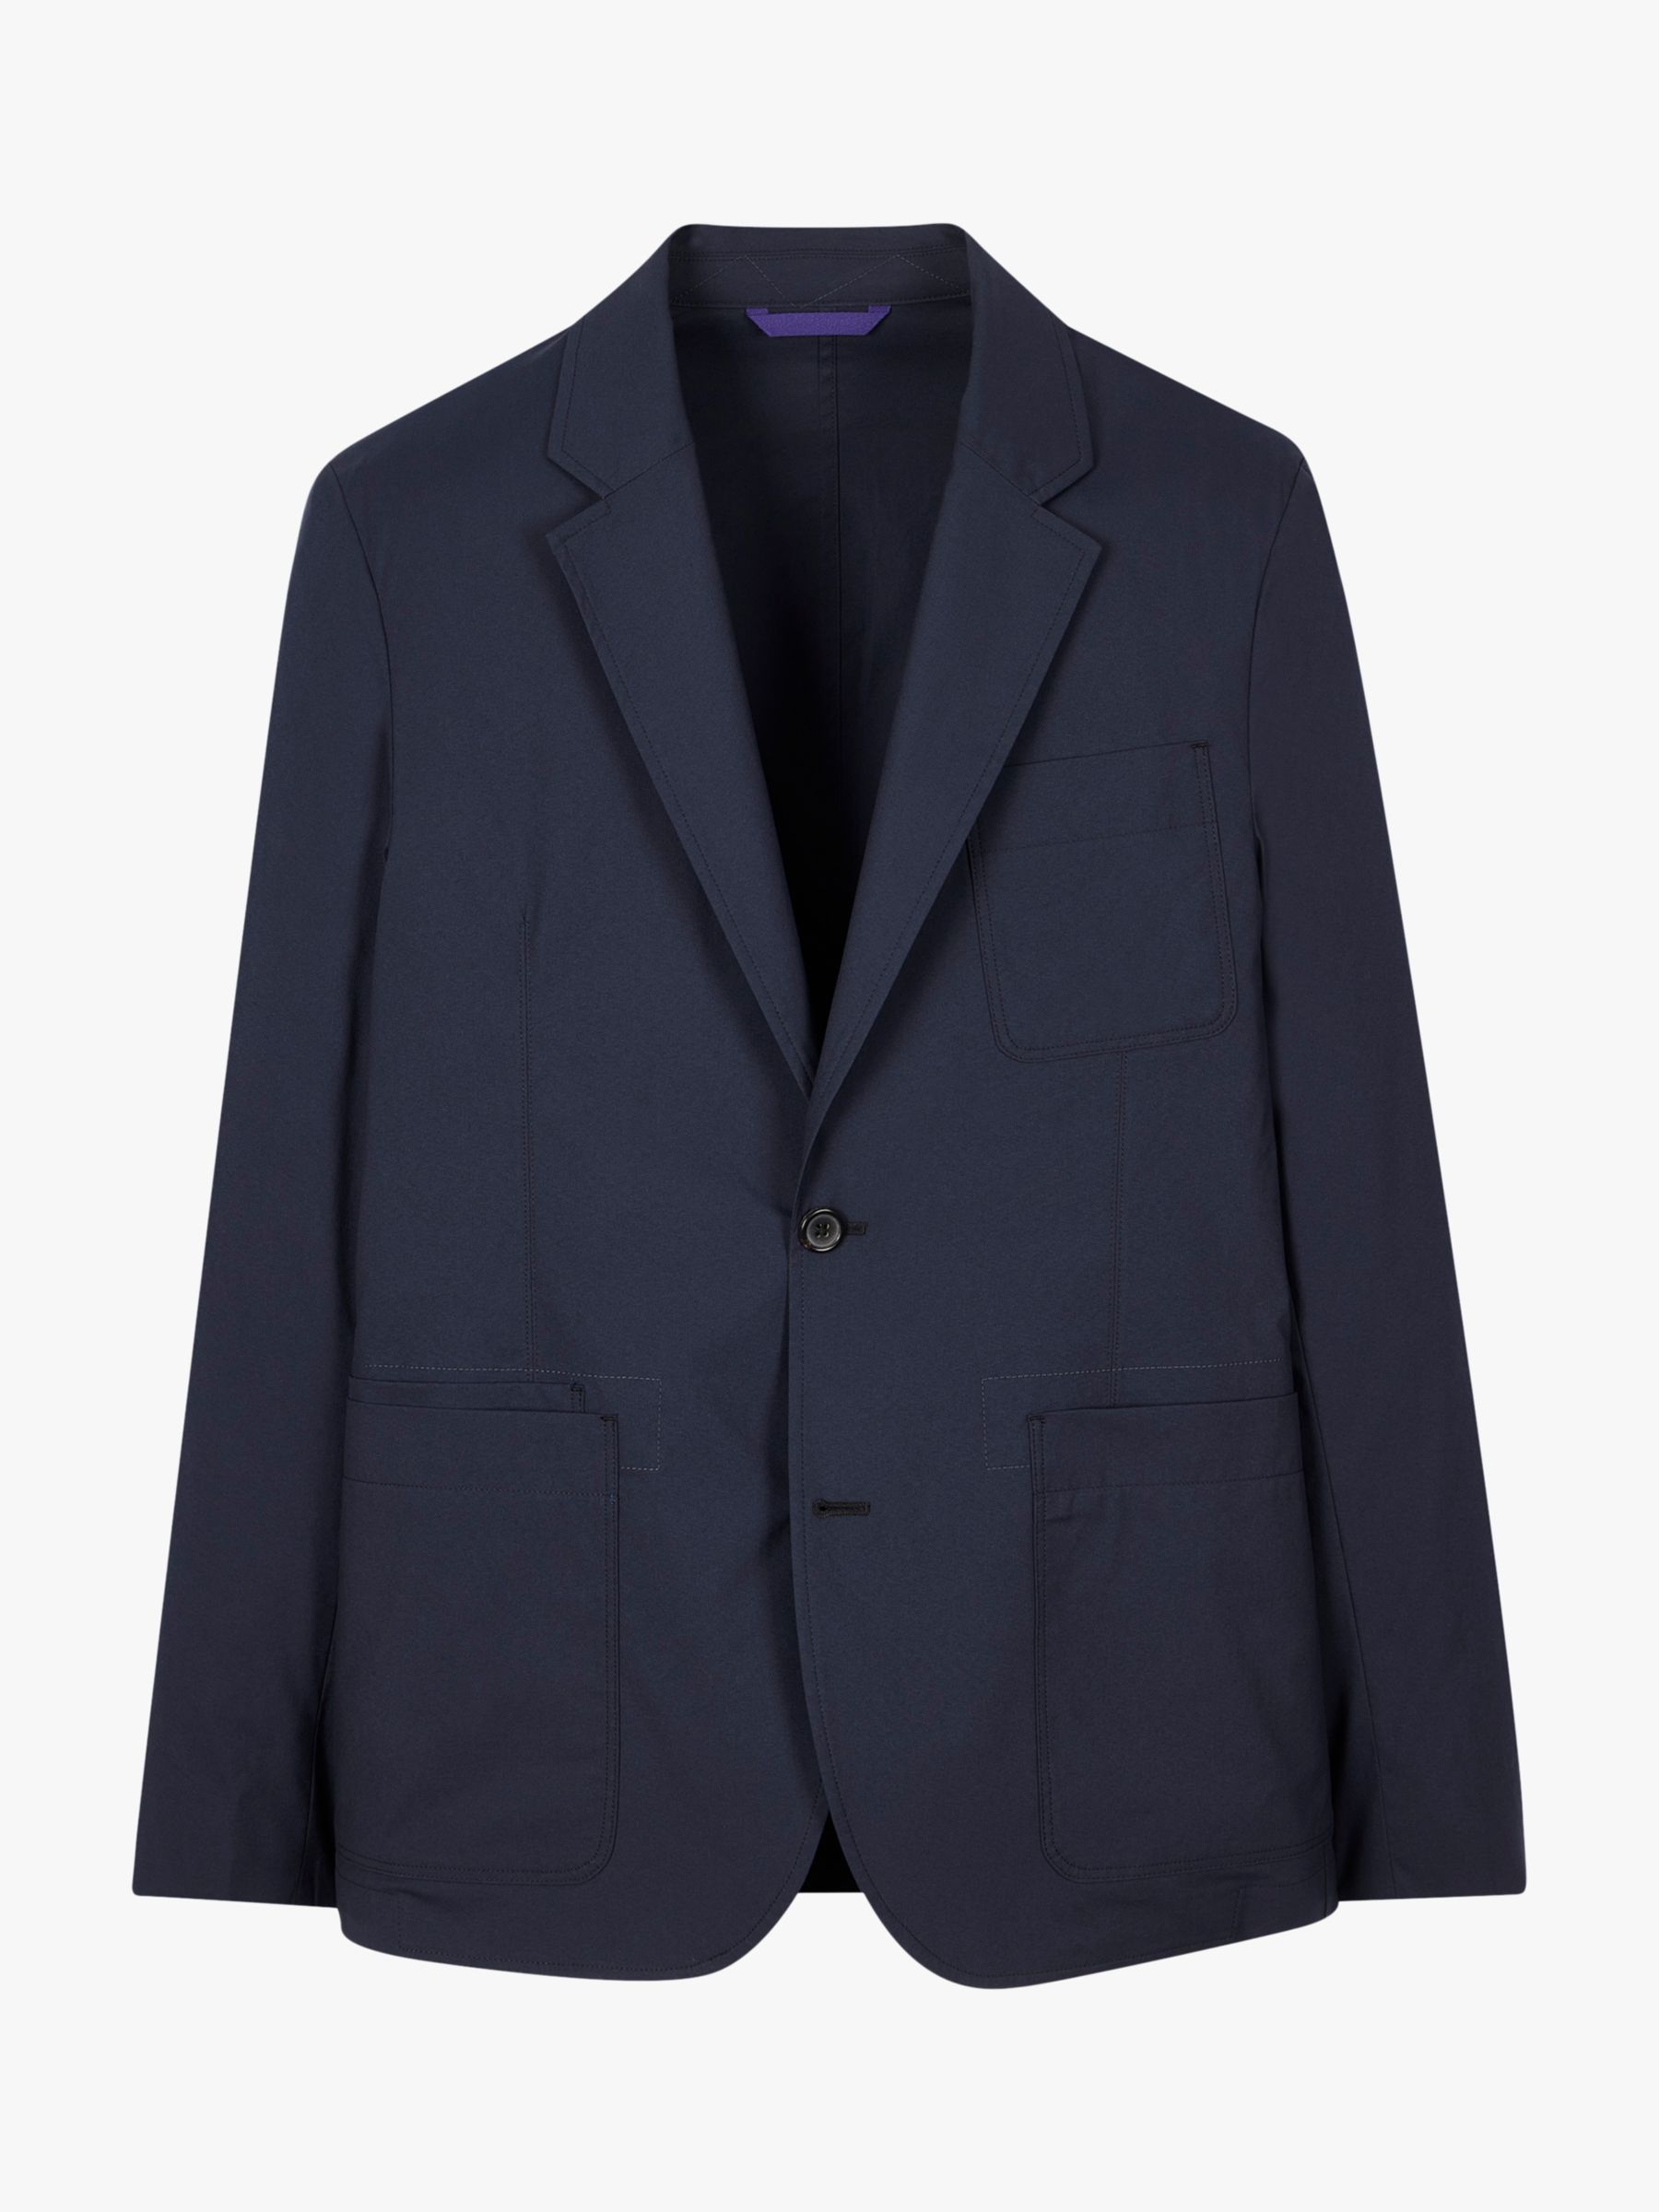 PS Paul Smith Organic Cotton Blend Suit Jacket, Blues, S